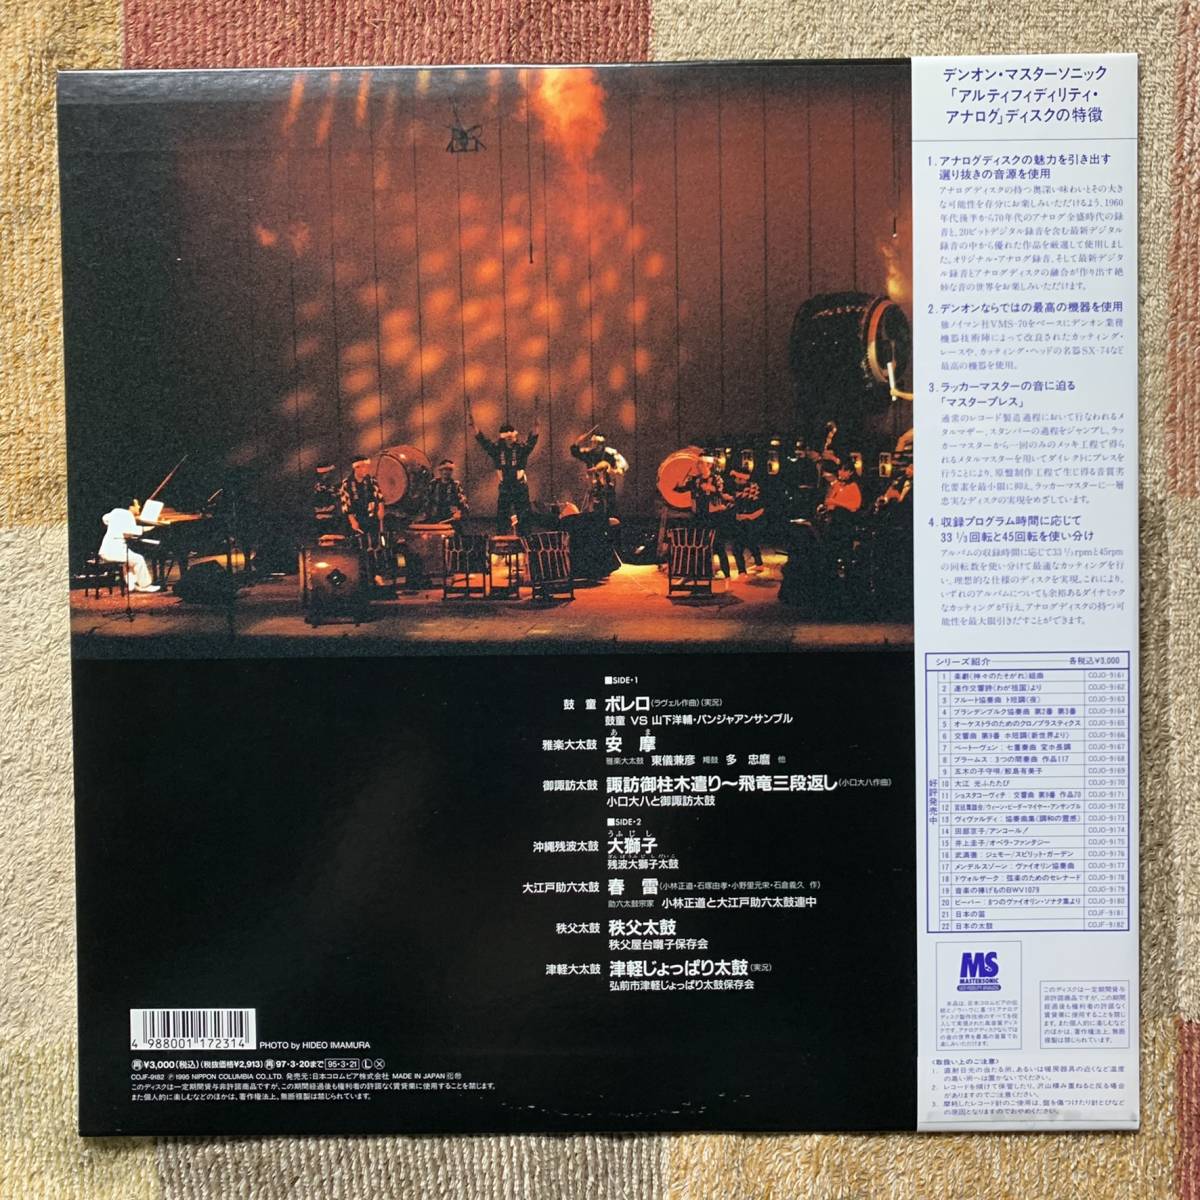 LP☆マスター・ソニック COJF-9182☆「日本の太鼓」【鼓童 沖縄残波